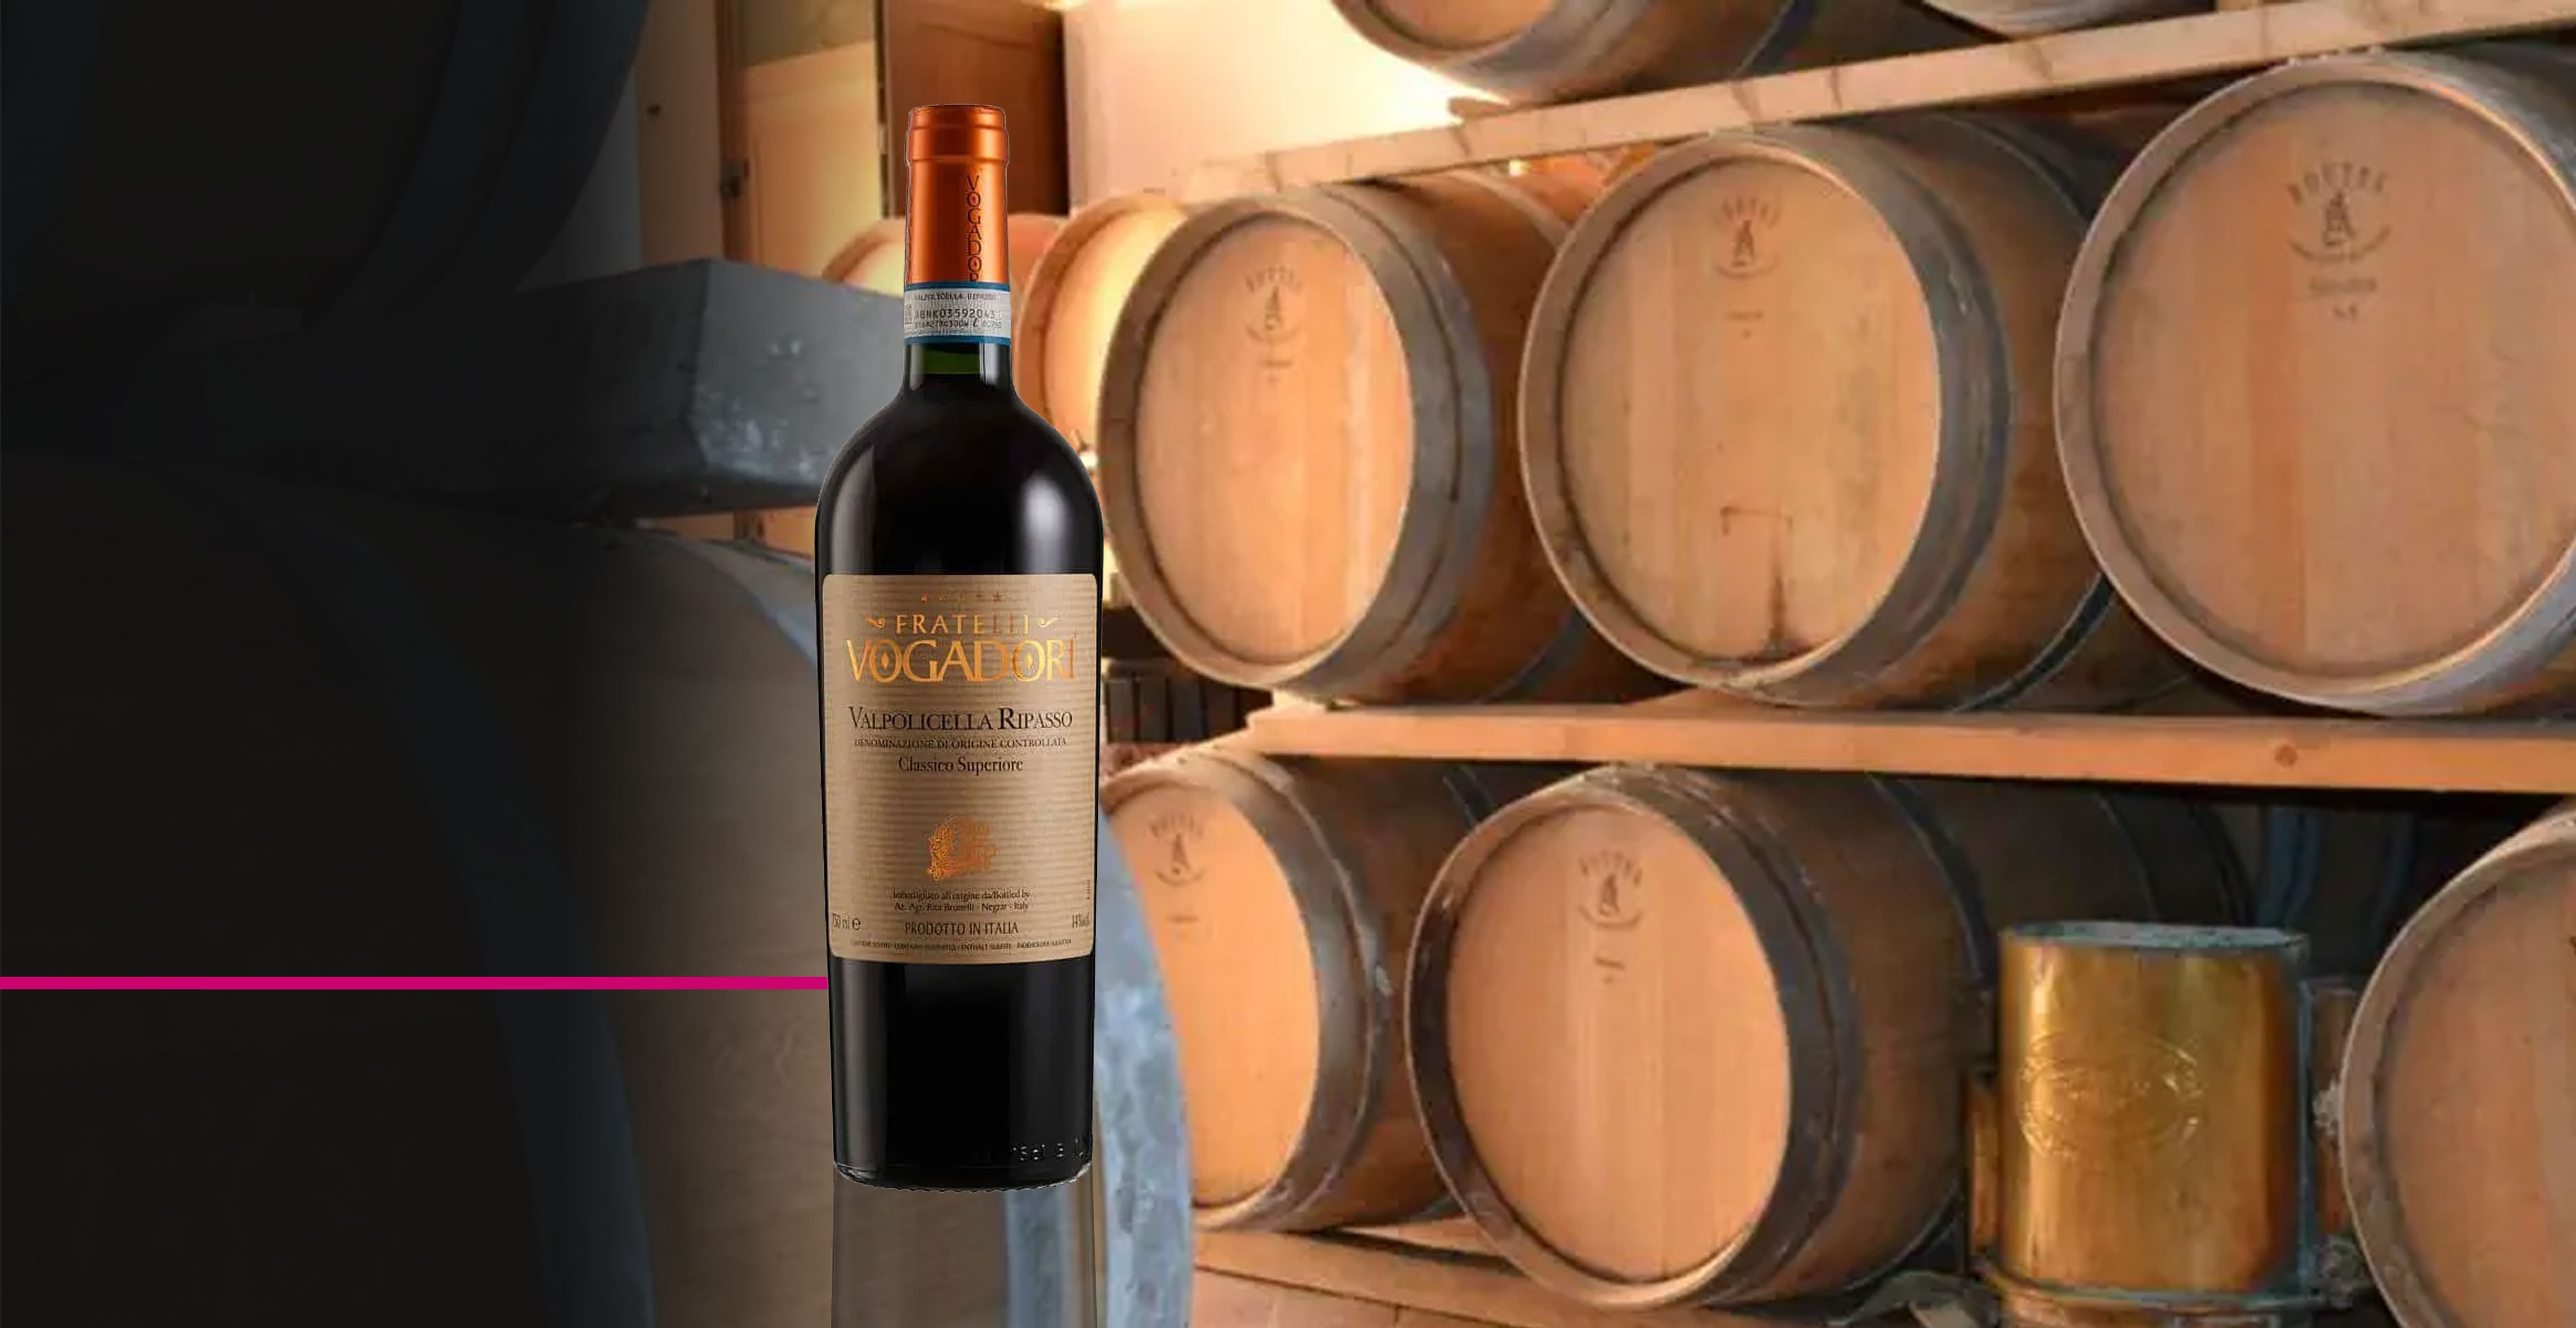 Rode wijn - Fratelli Vogadori - Valpolicella Classico Superiore Ripasso